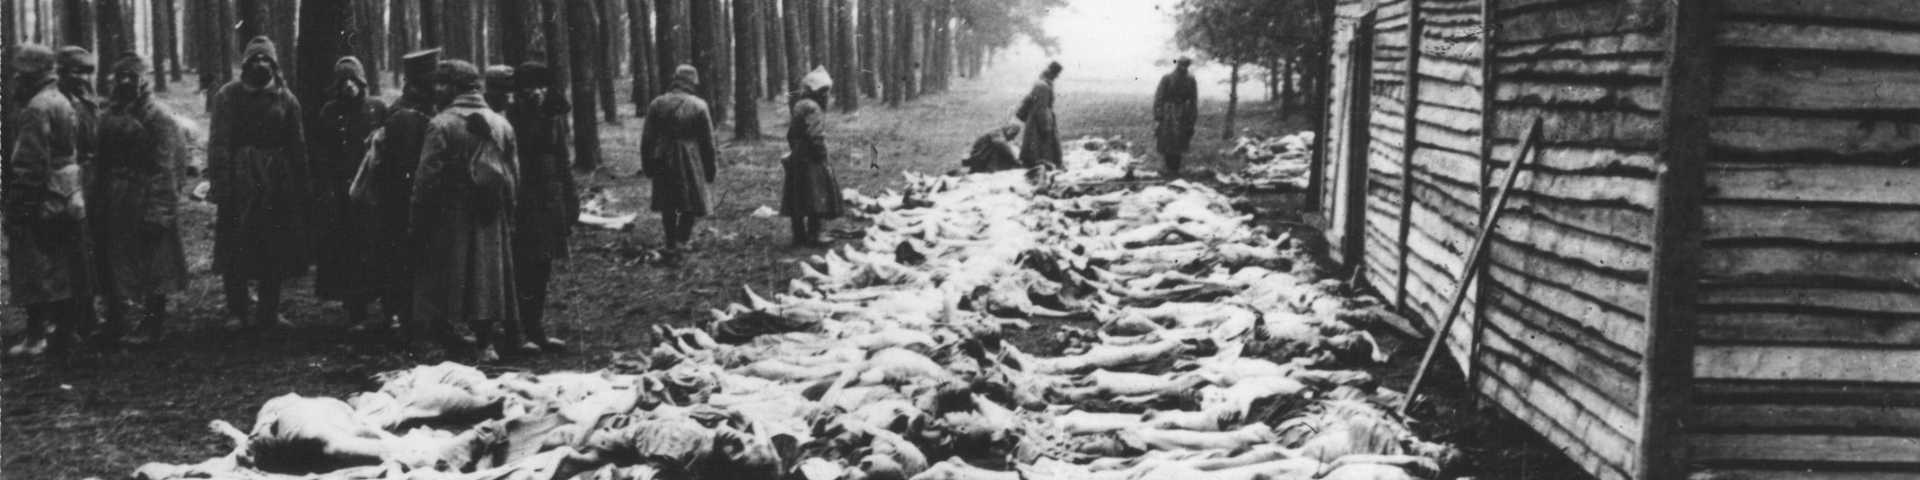 Меморијализација жртава ратних злочина: Копање по ранама или (не)поштовање убијених?